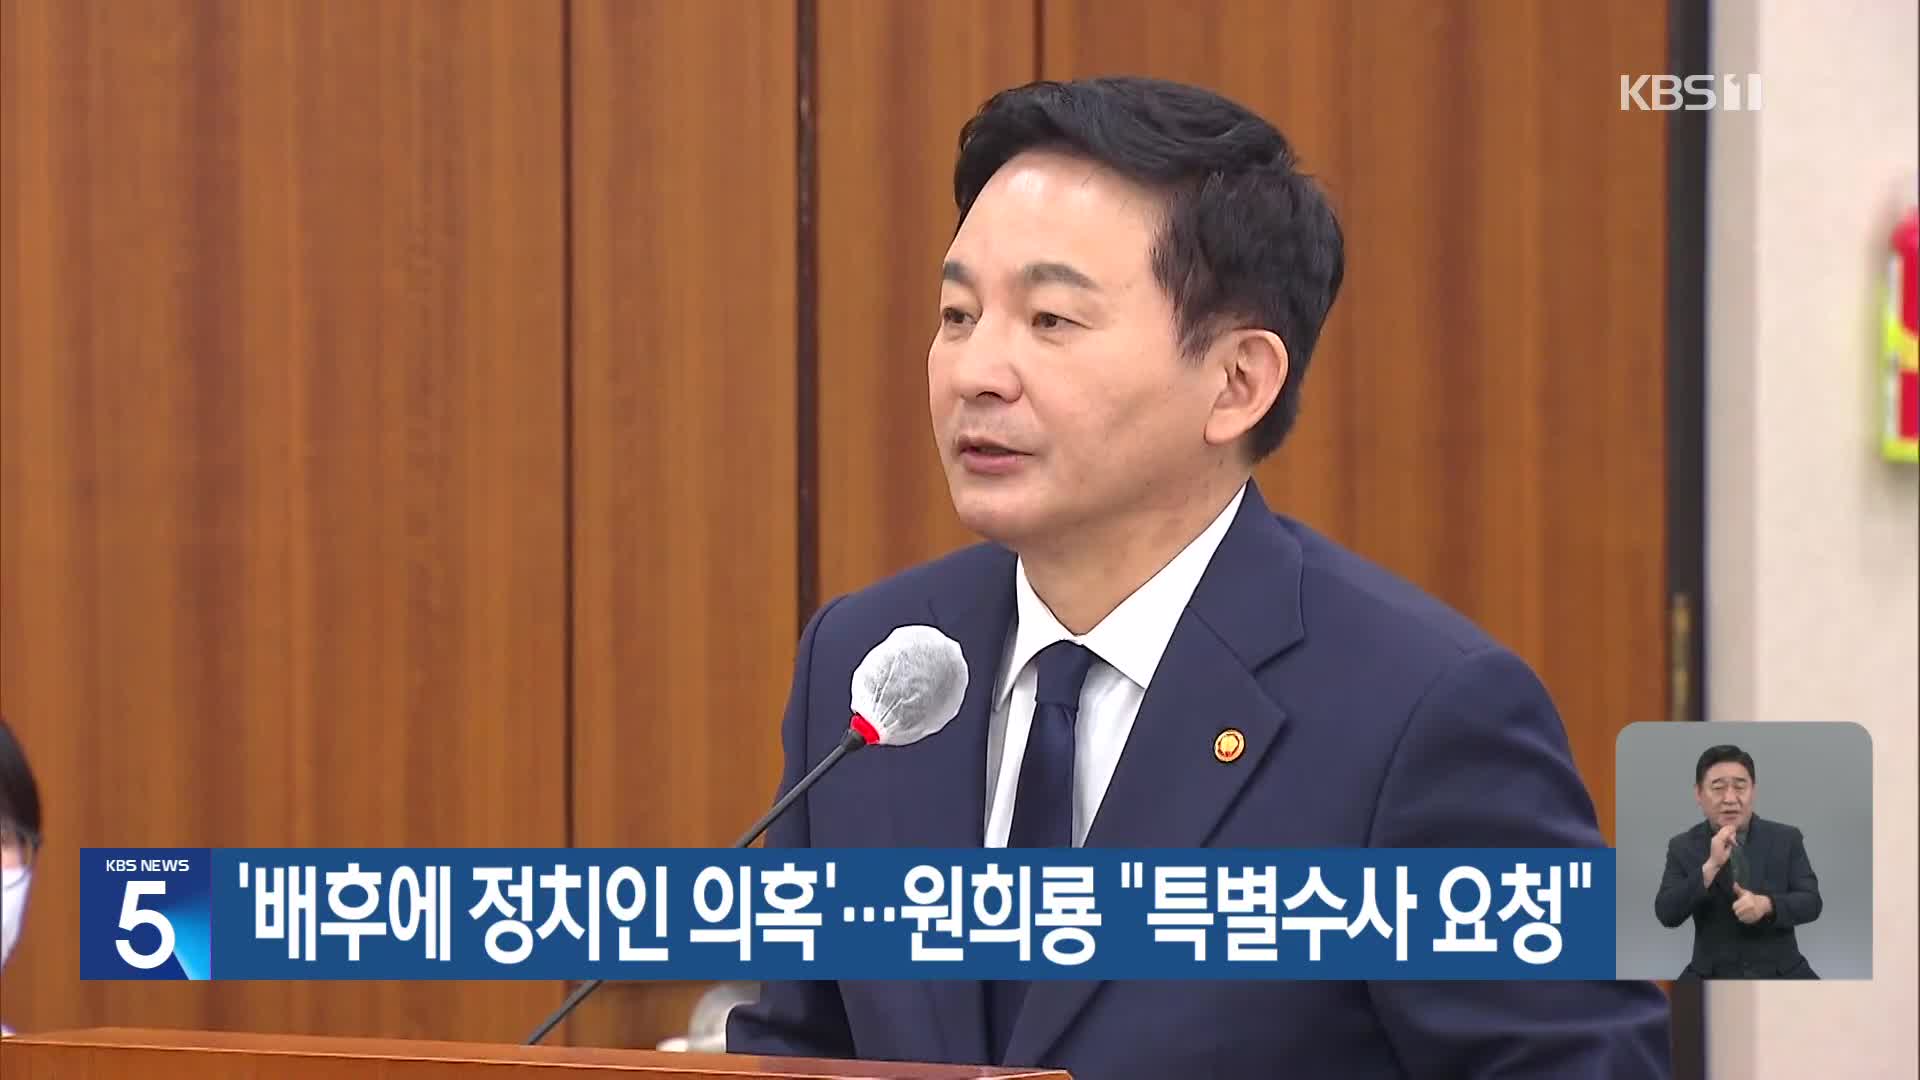 ‘배후에 정치인 의혹’…원희룡 “특별수사 요청”